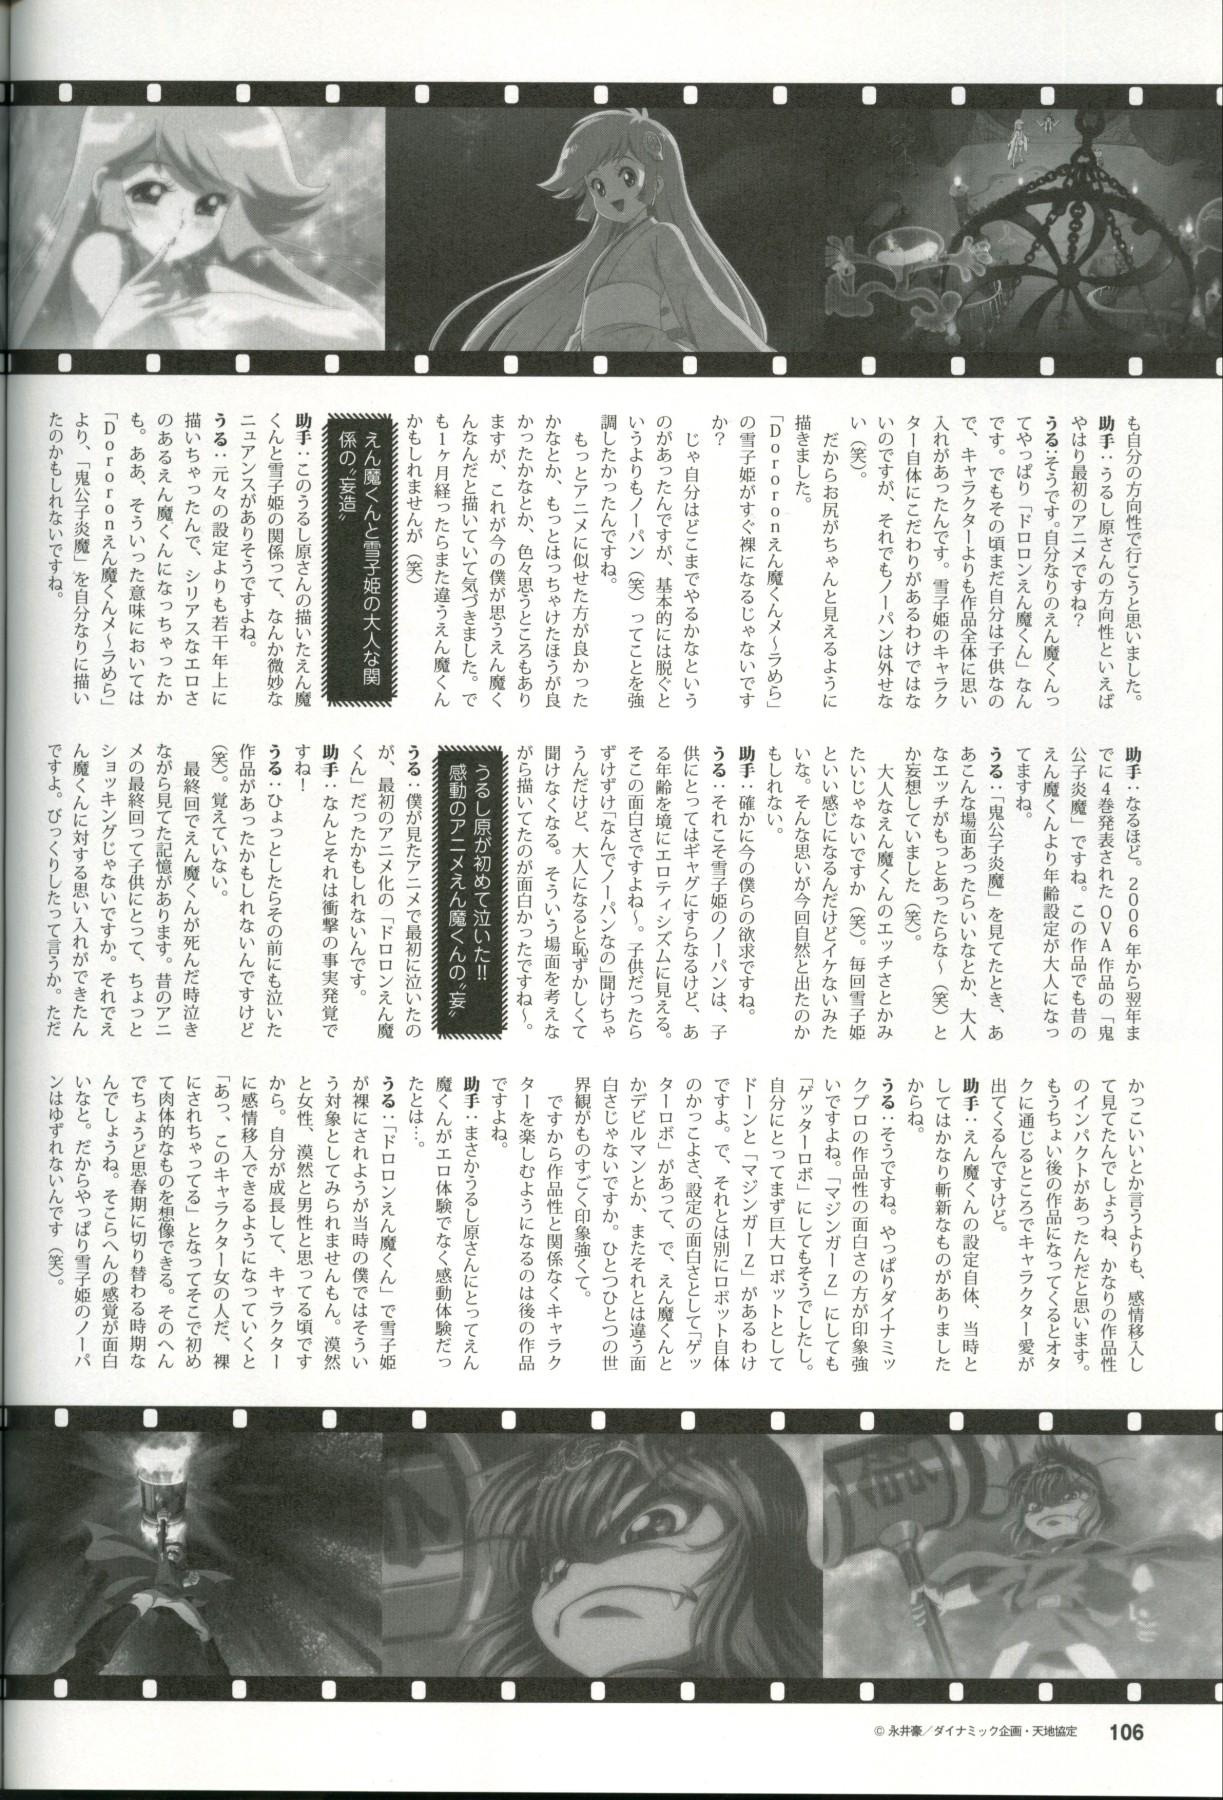 U-LOVERS Urushihara Satoshi Magazine vol.1 100